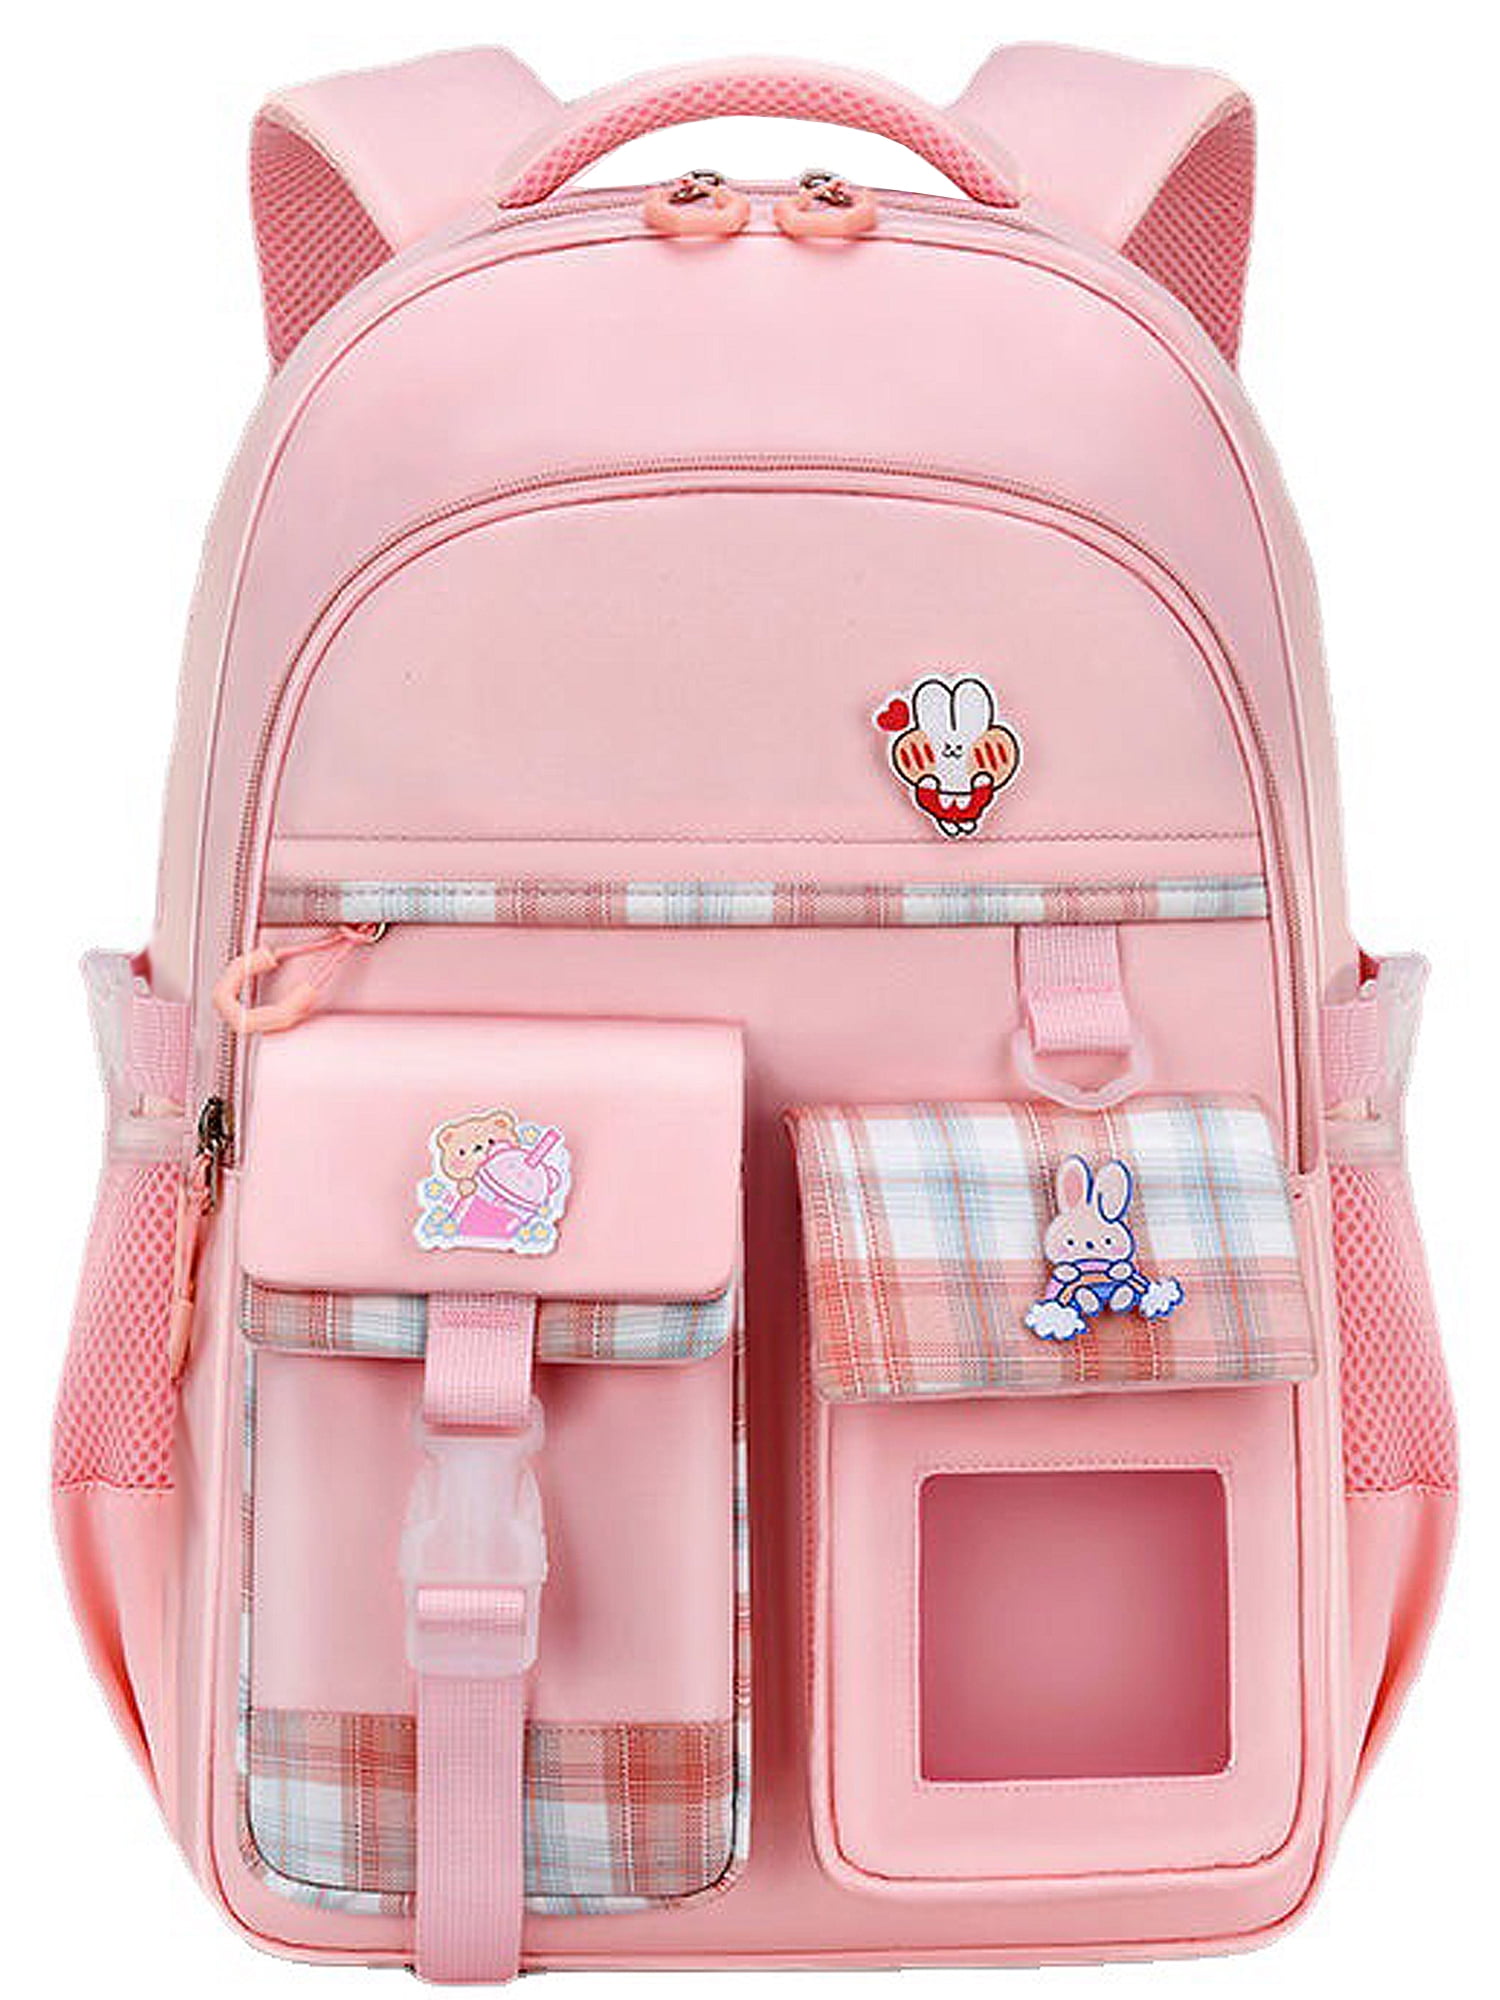 Girls' backpacks 